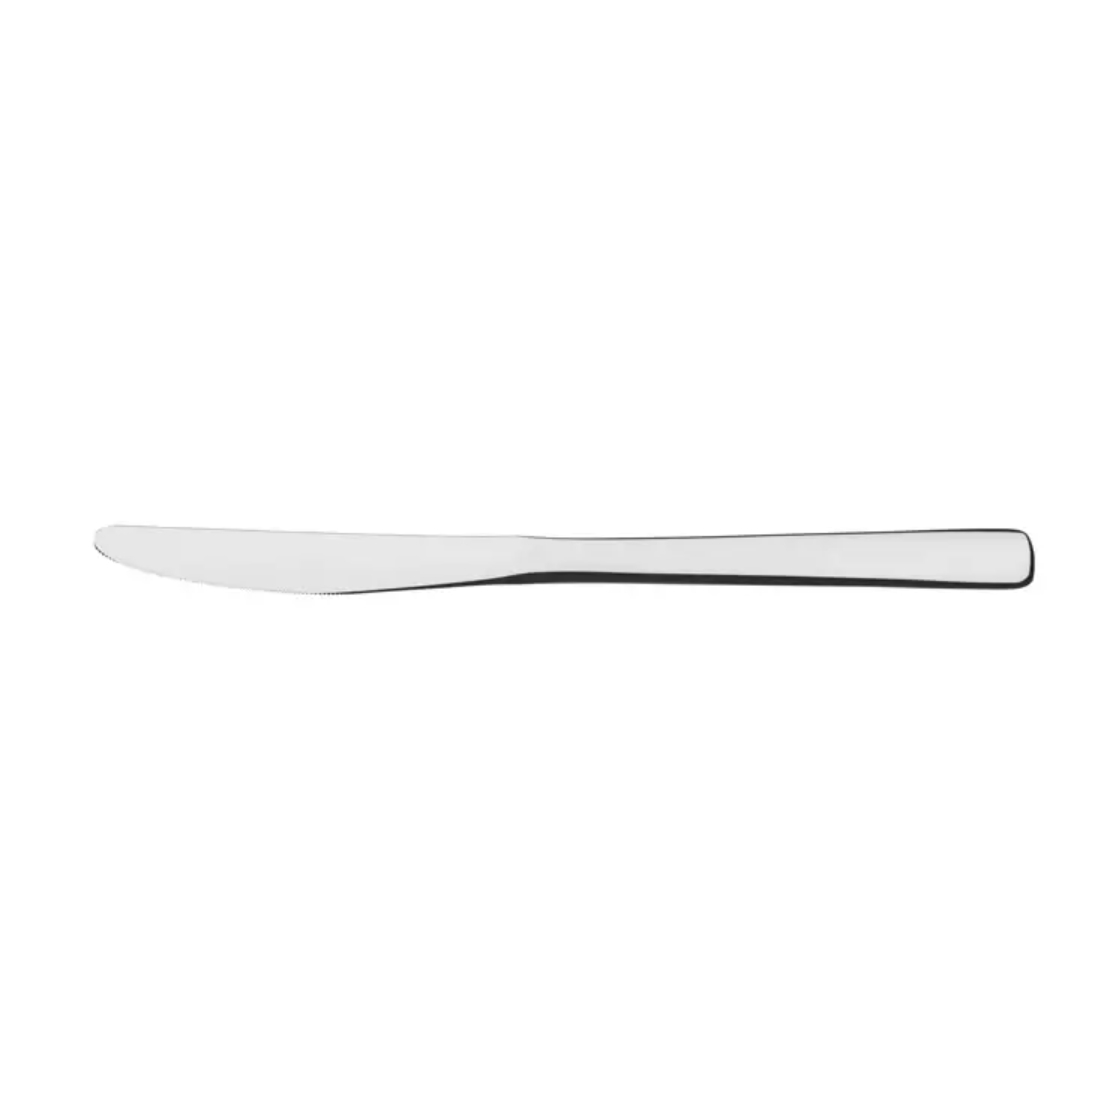 Где купить Нож столовый Tramontina Berlin, 22.4 см Tramontina 